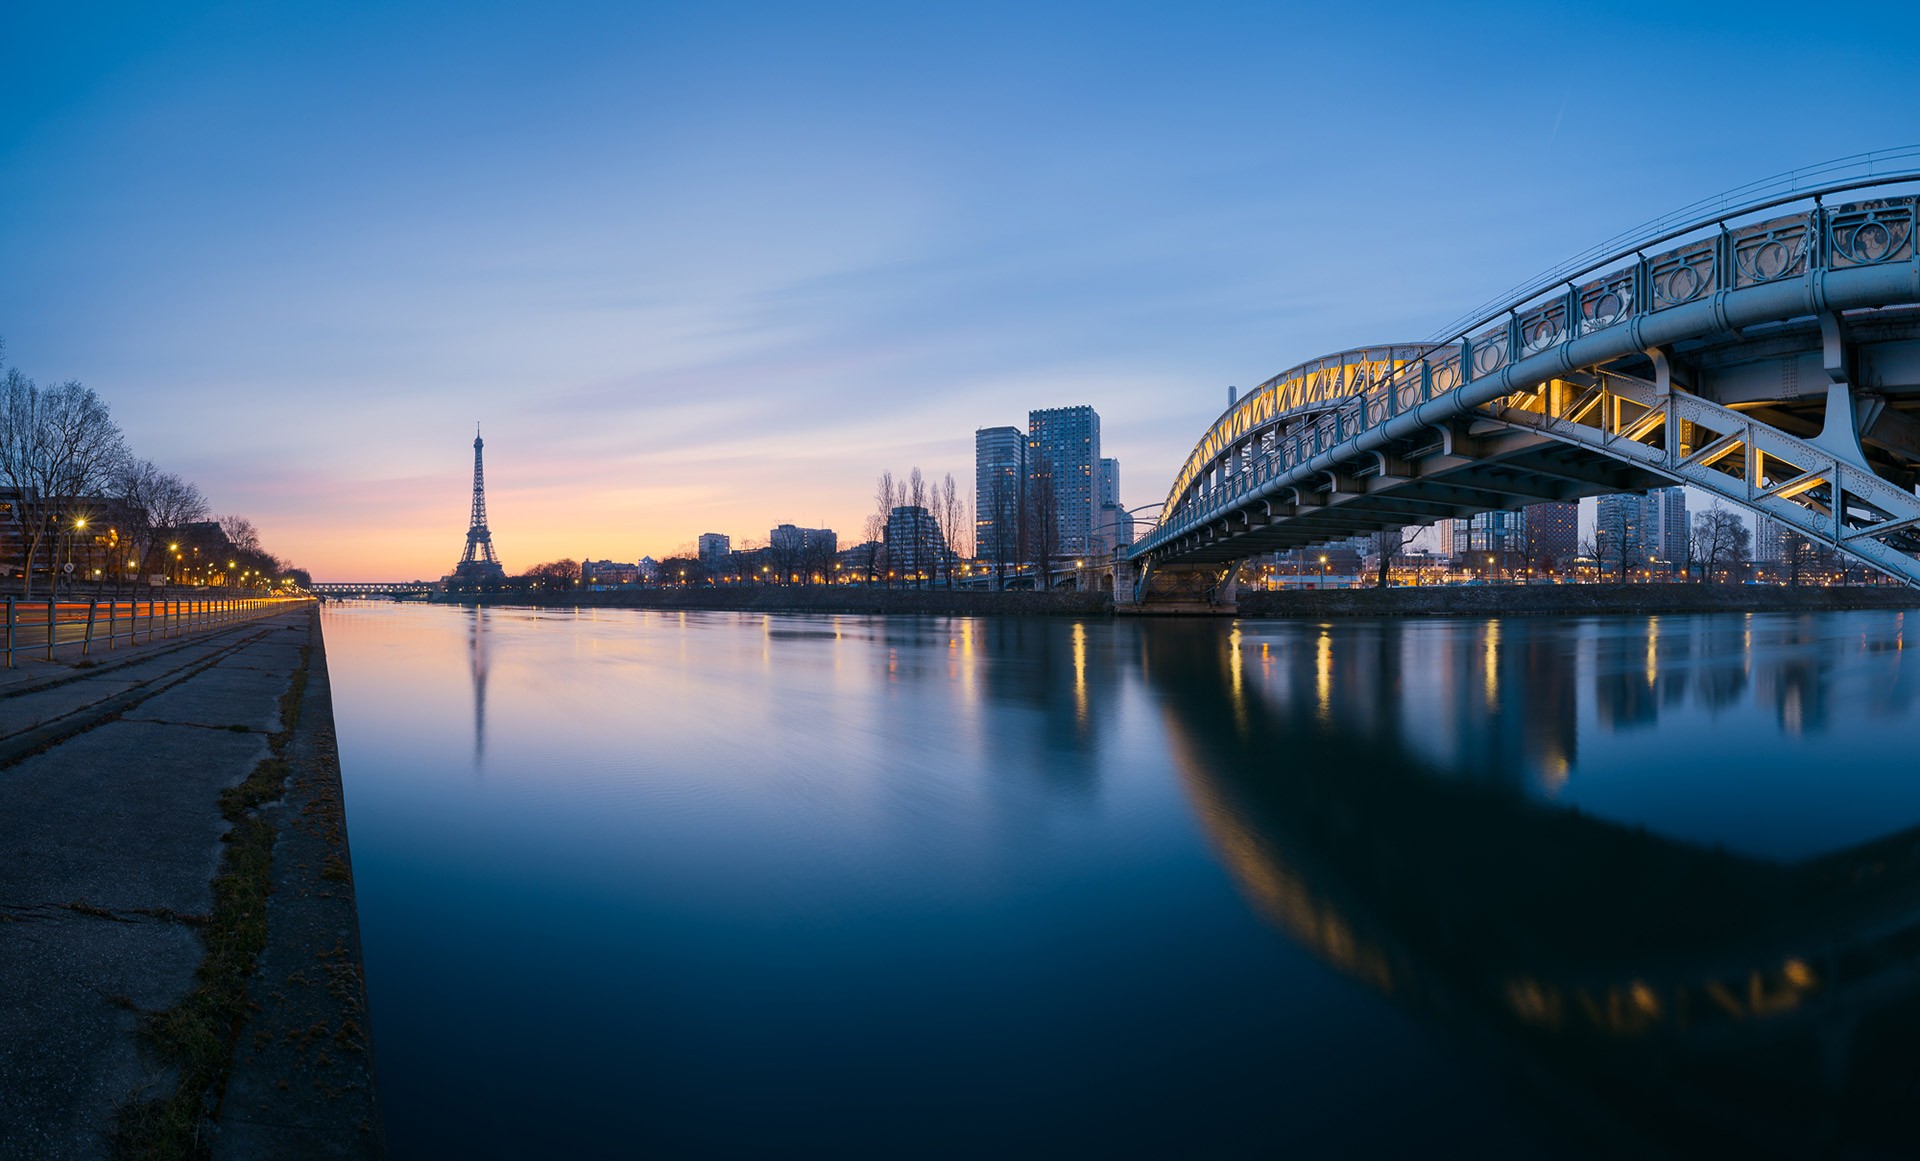 General 1920x1161 Paris bridge Eiffel Tower city cityscape France Seine 